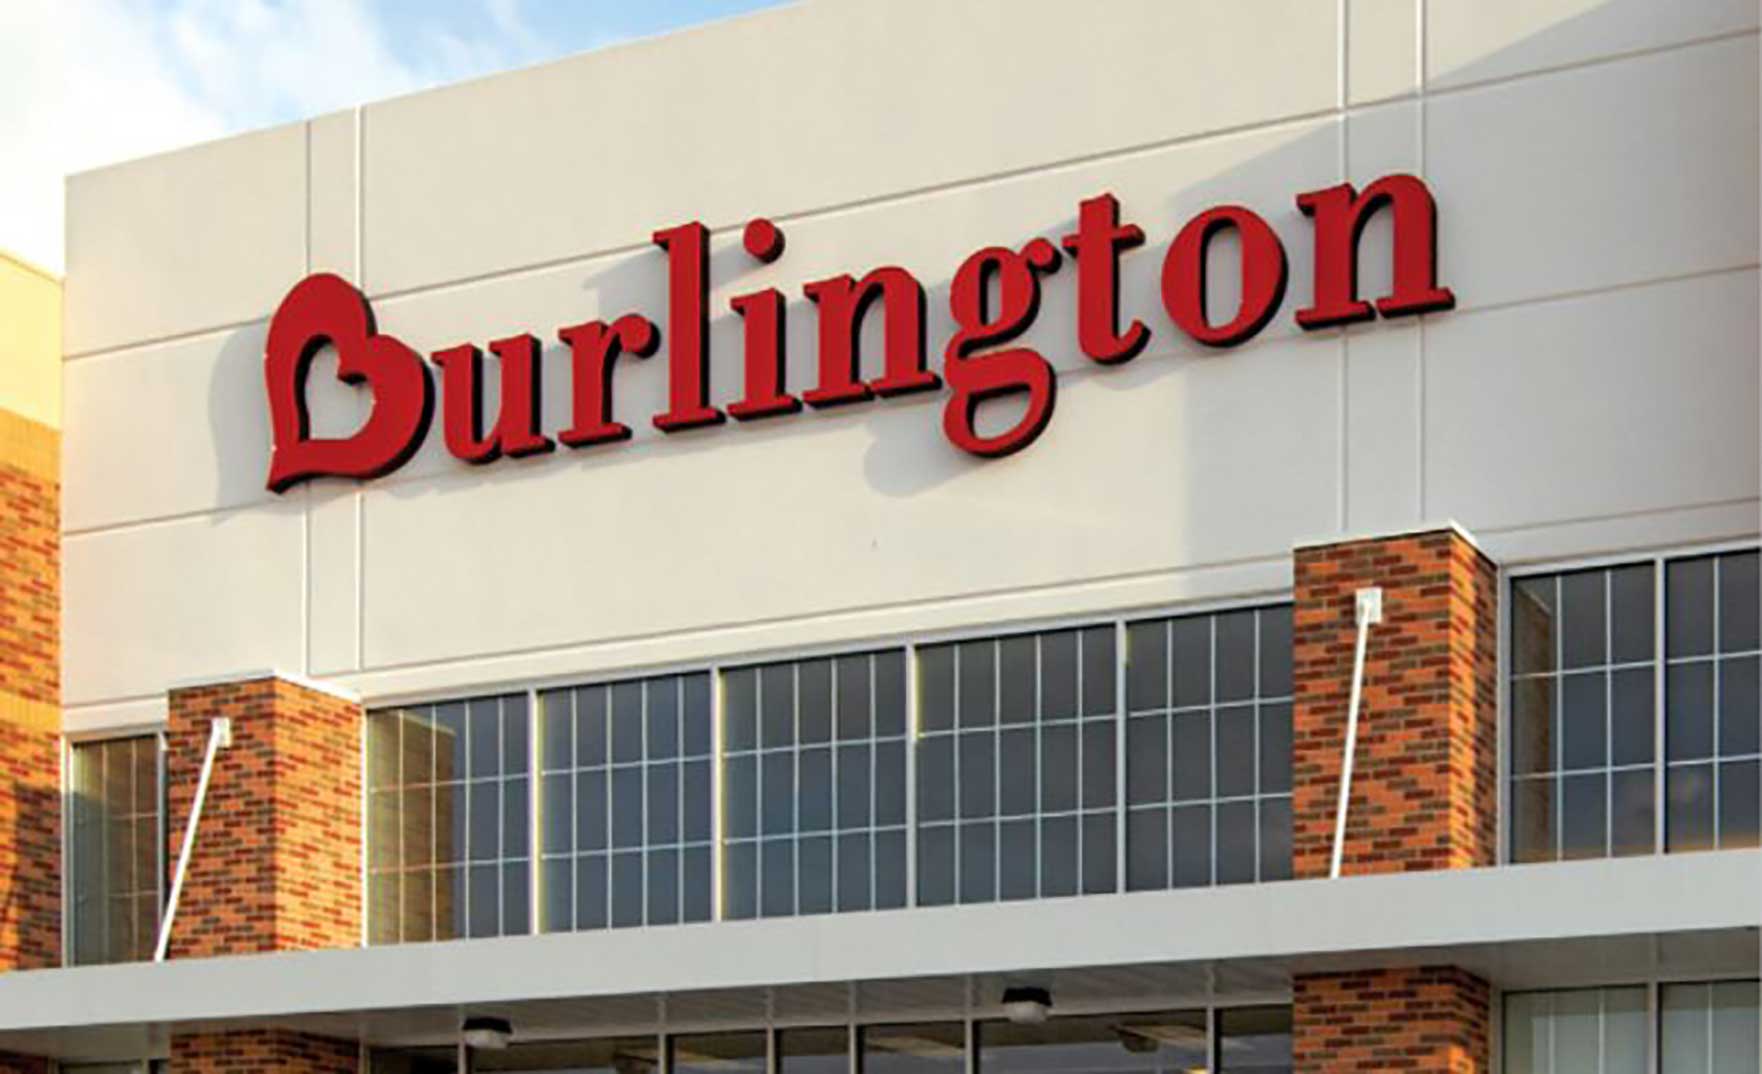 burlington stires and retail